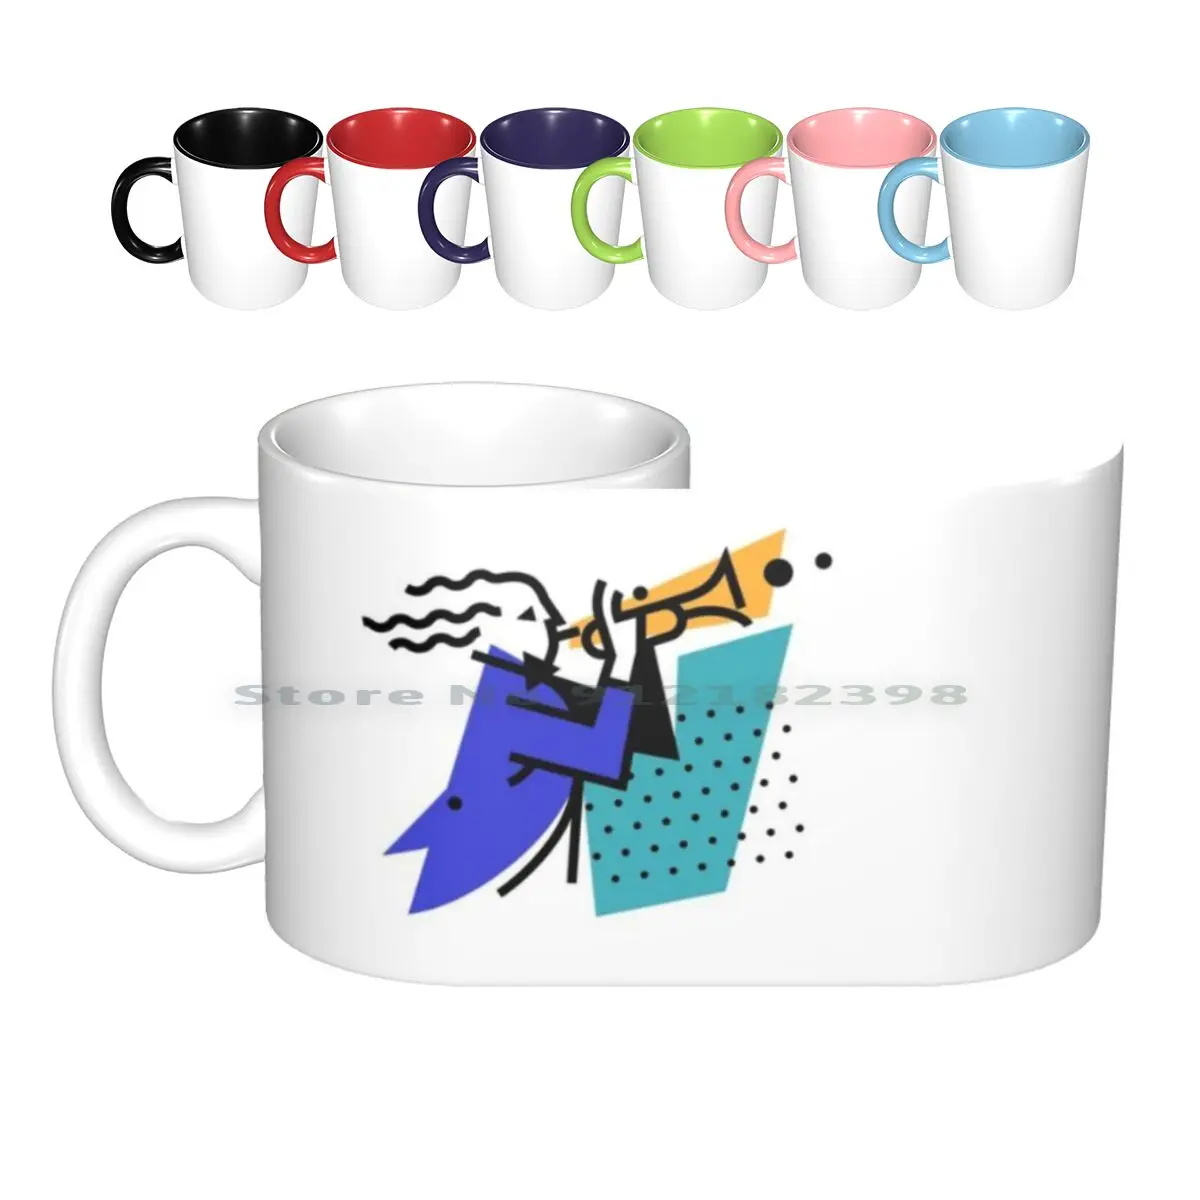 

Иллюстрация музыканта, труба, керамические кружки, кофейные чашки, Кружка для молока и чая, логотип бренда Jazz персонажа, икона, труба, музыка